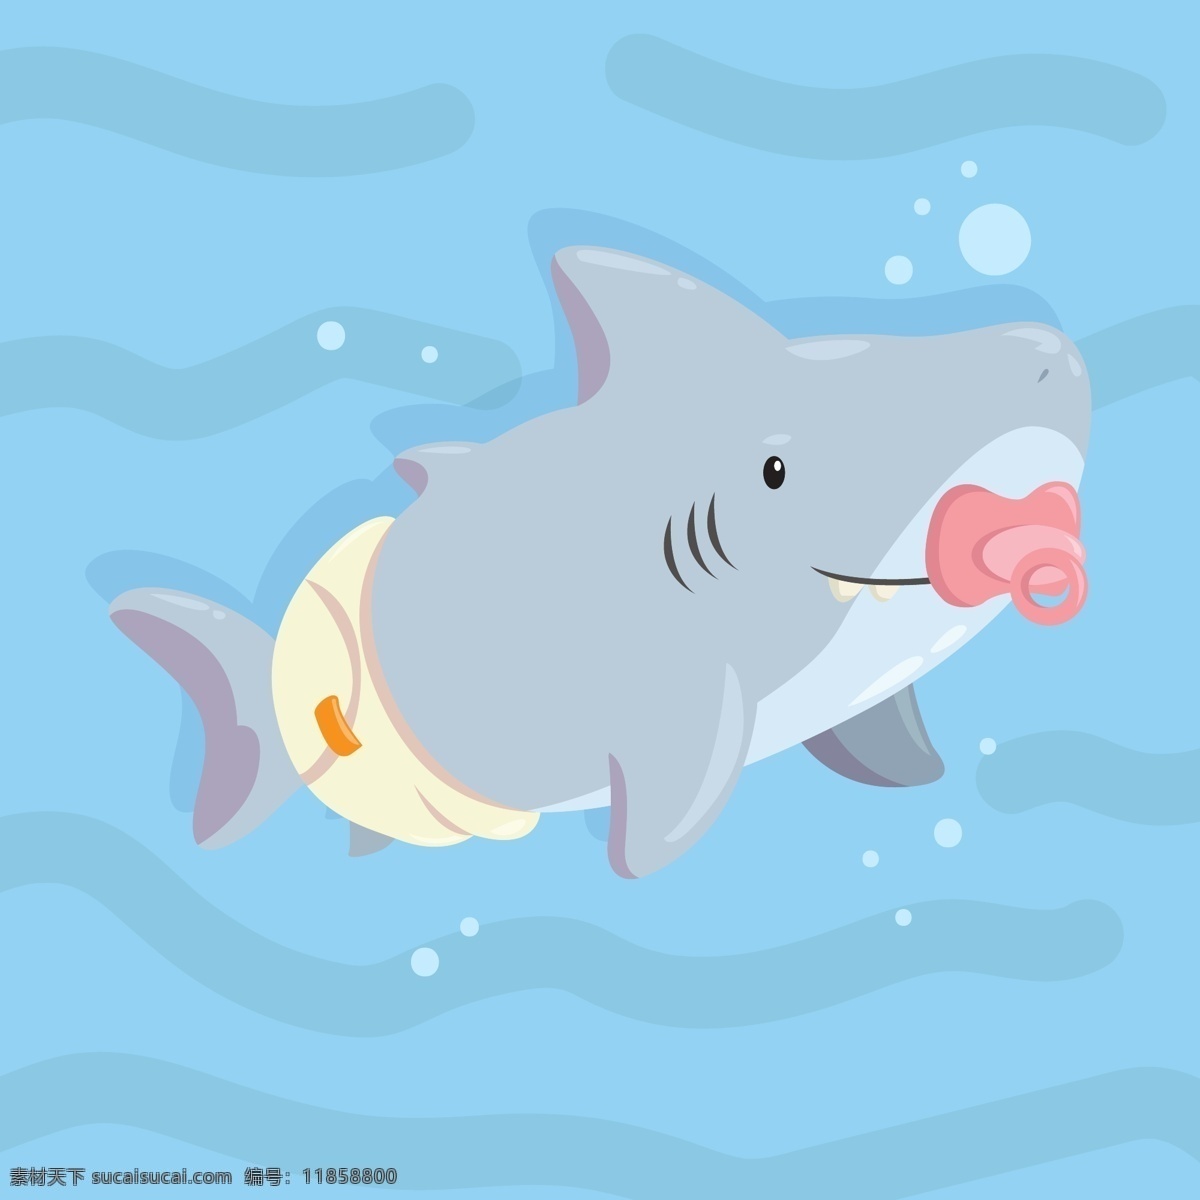 鲨鱼图片 鲨鱼 海洋生物 海底世界 手绘 插画 ai矢量